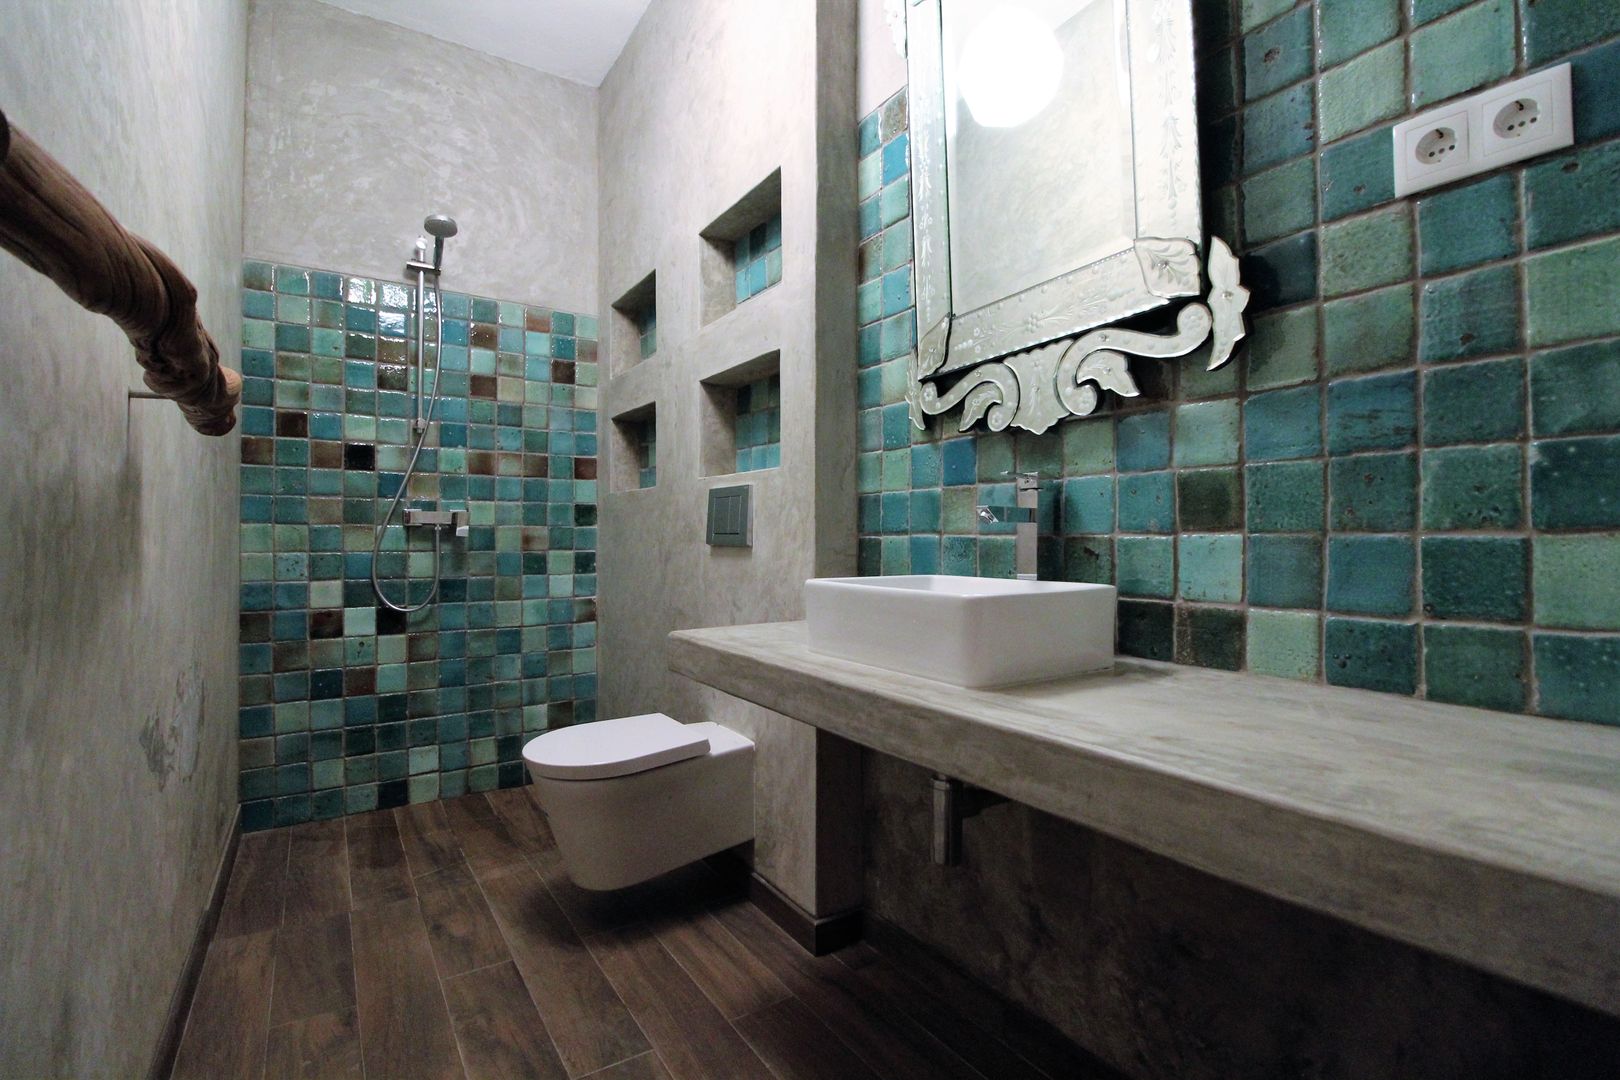 Casa de banho em microcimento e azulejo feito à mão. Atelier Ana Leonor Rocha Banheiros mediterrâneos